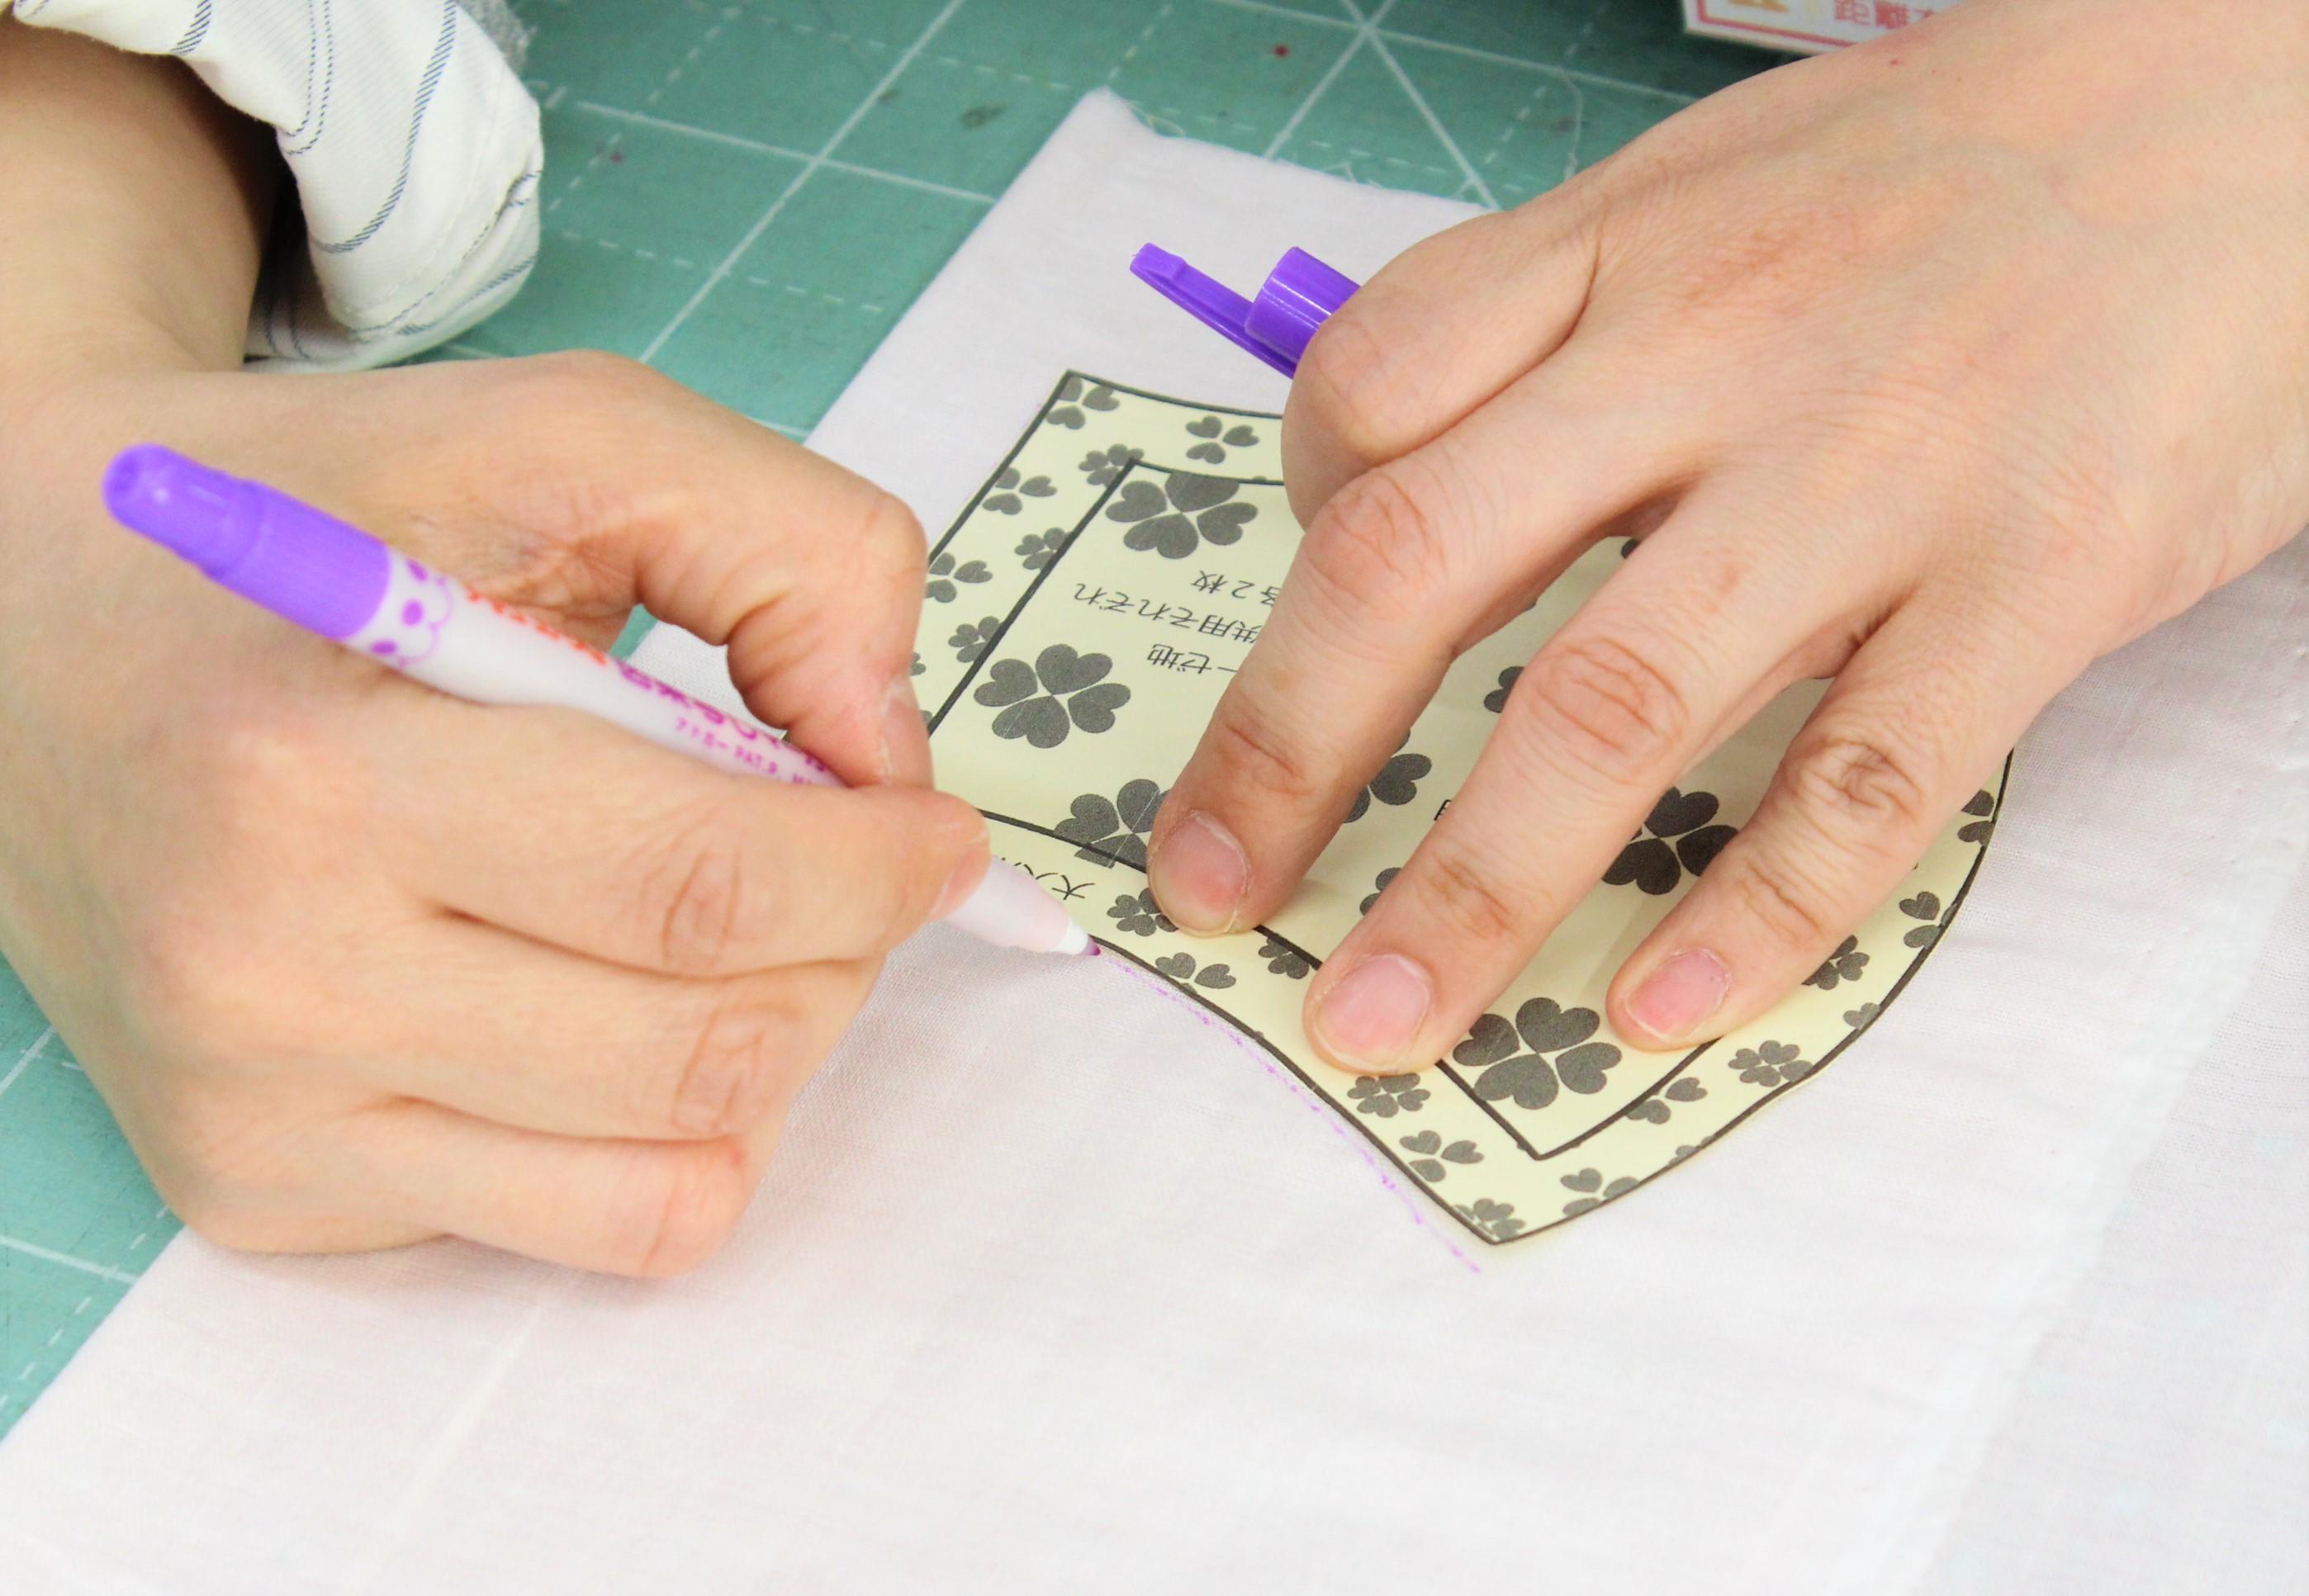 ①型紙を切り抜き、半分に折った布地に形を書き写す。